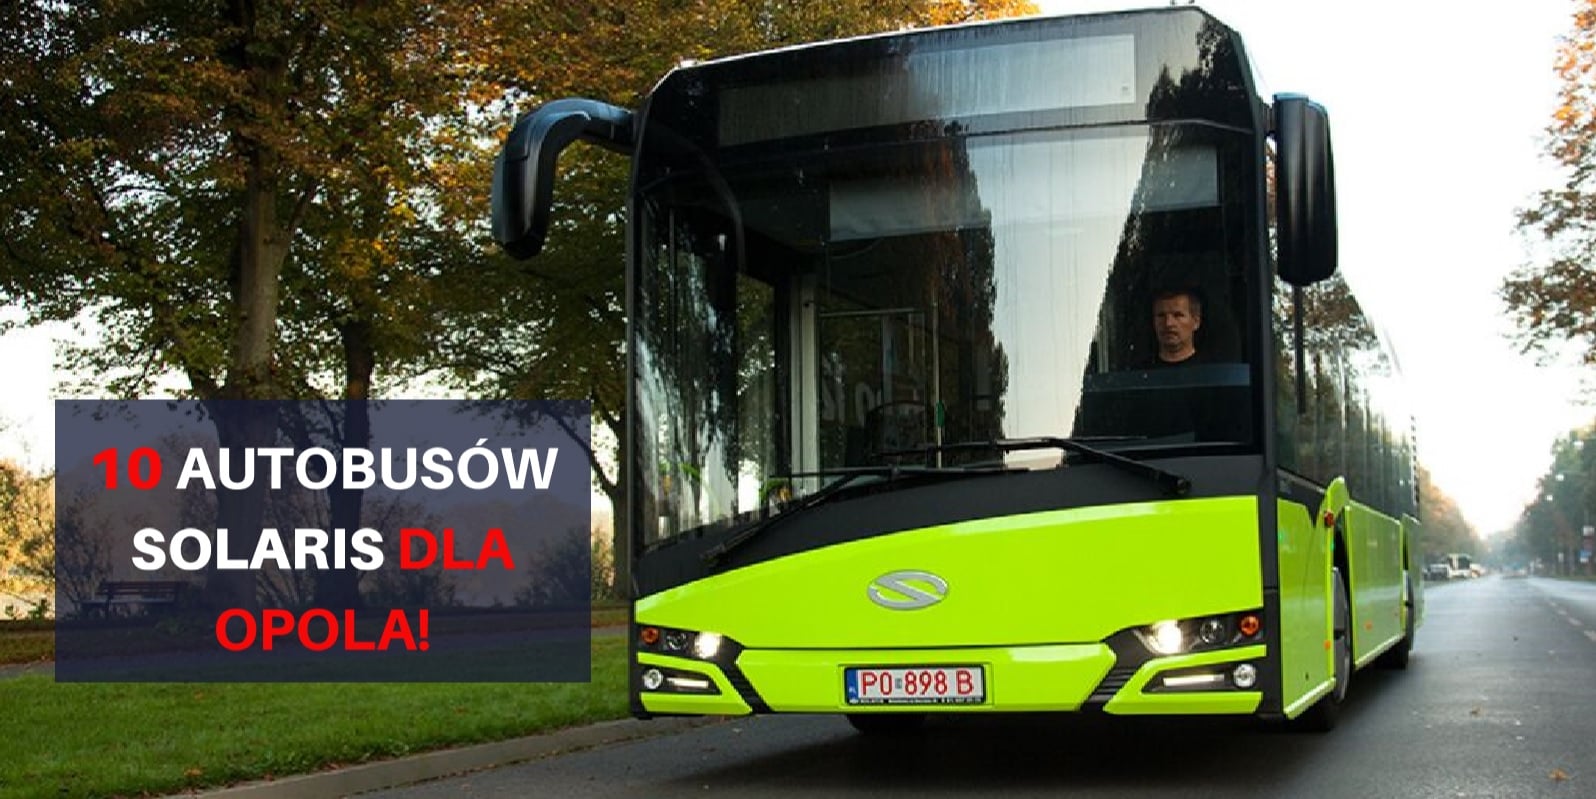 Opole podpisało umowę na dziesięć supernowoczesnych autobusów firmy Solaris [WIDEO]